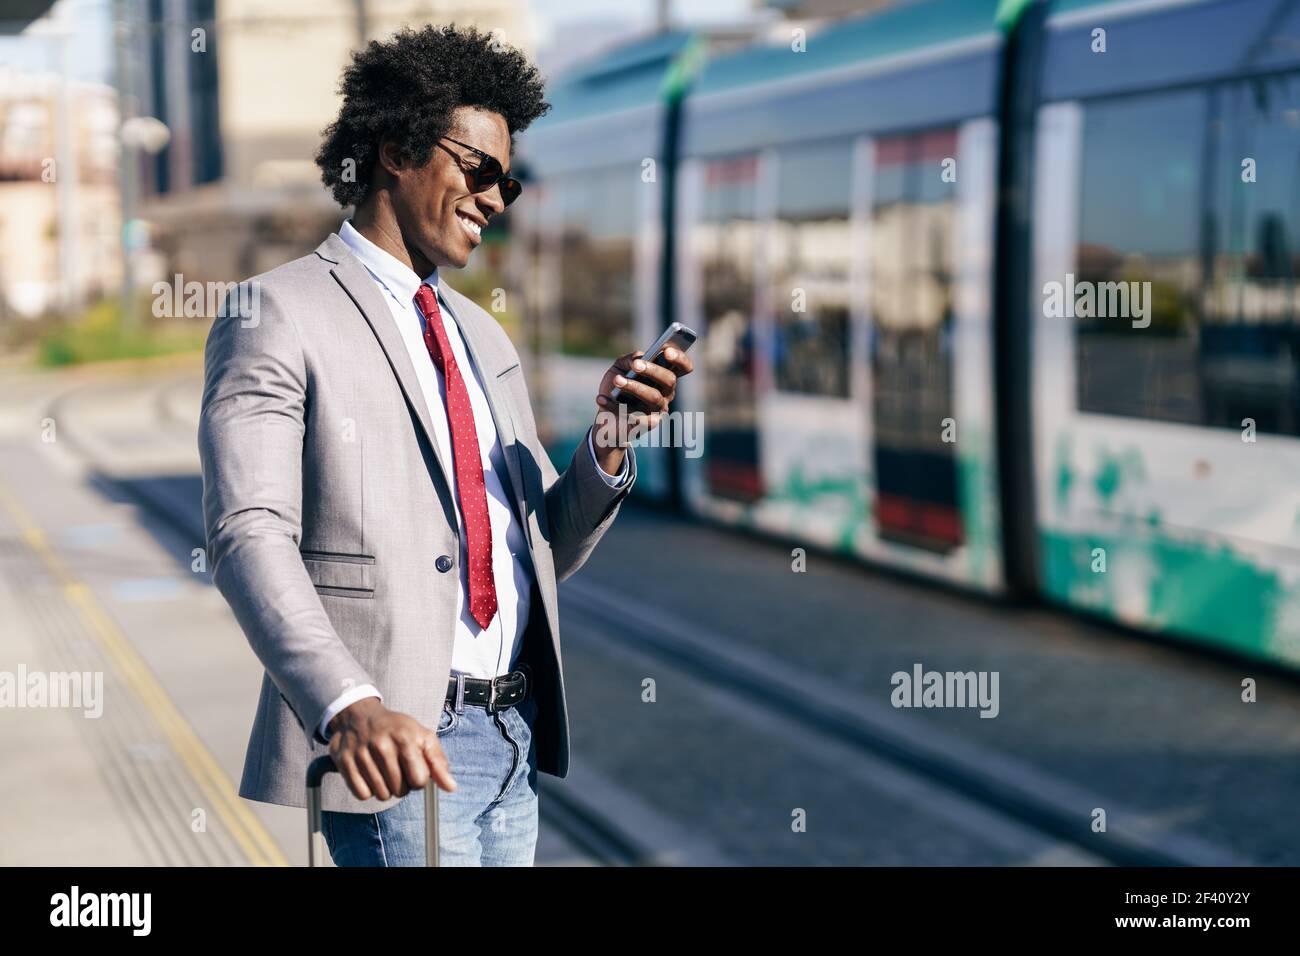 Homme d'affaires noir souriant attendant le prochain train. Homme avec des cheveux afro navettage.. Homme d'affaires noir souriant attendant le prochain train Banque D'Images